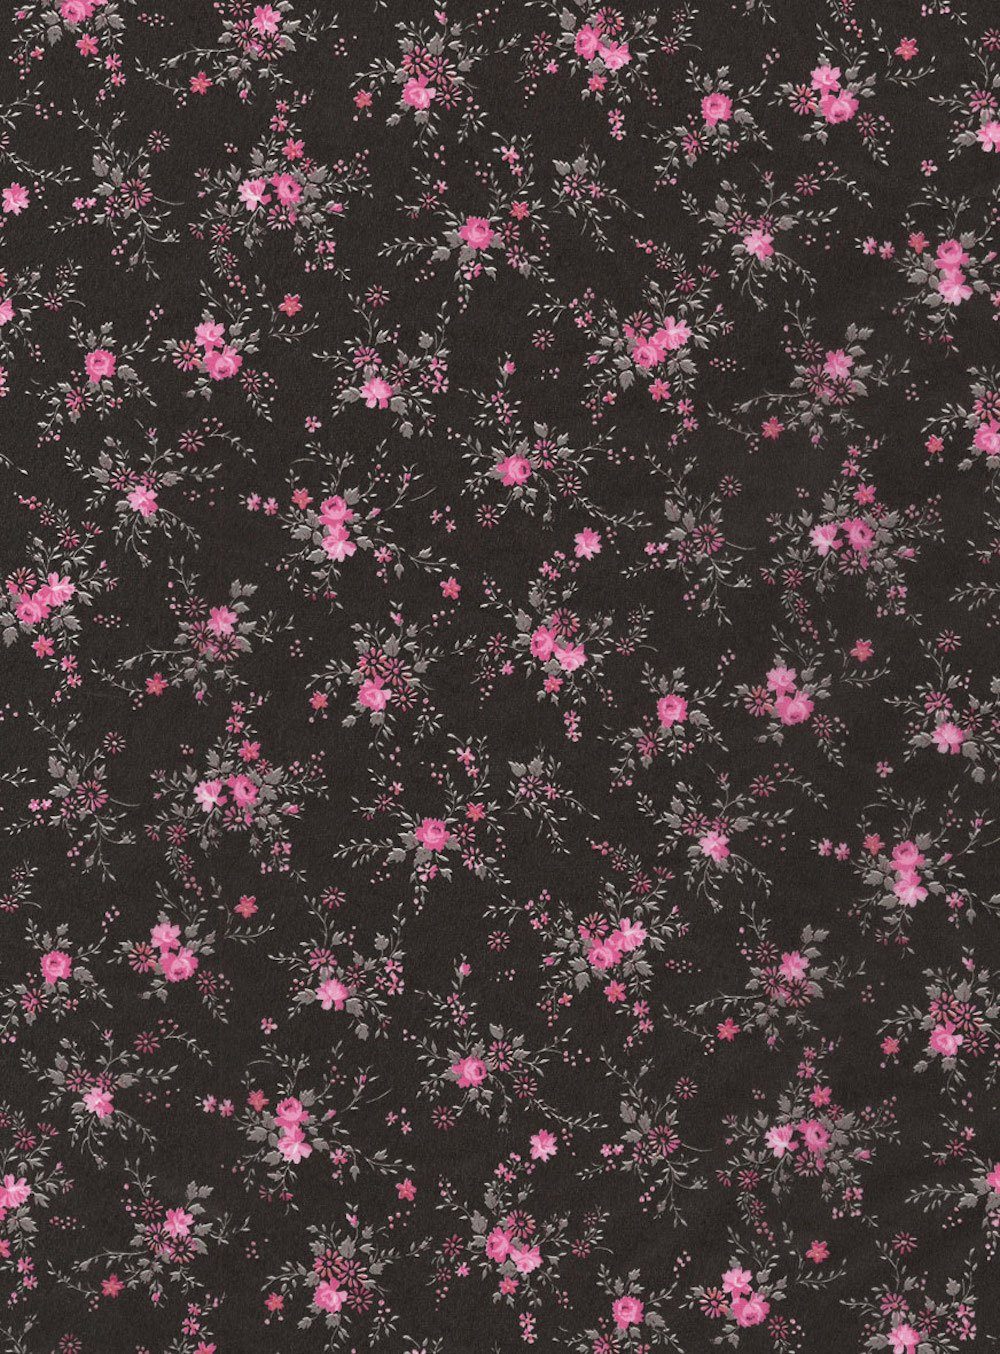 H-Erzmade Zeichenpapier Décopatch-Papier 565 30 Blumenzweige pink/schwarz